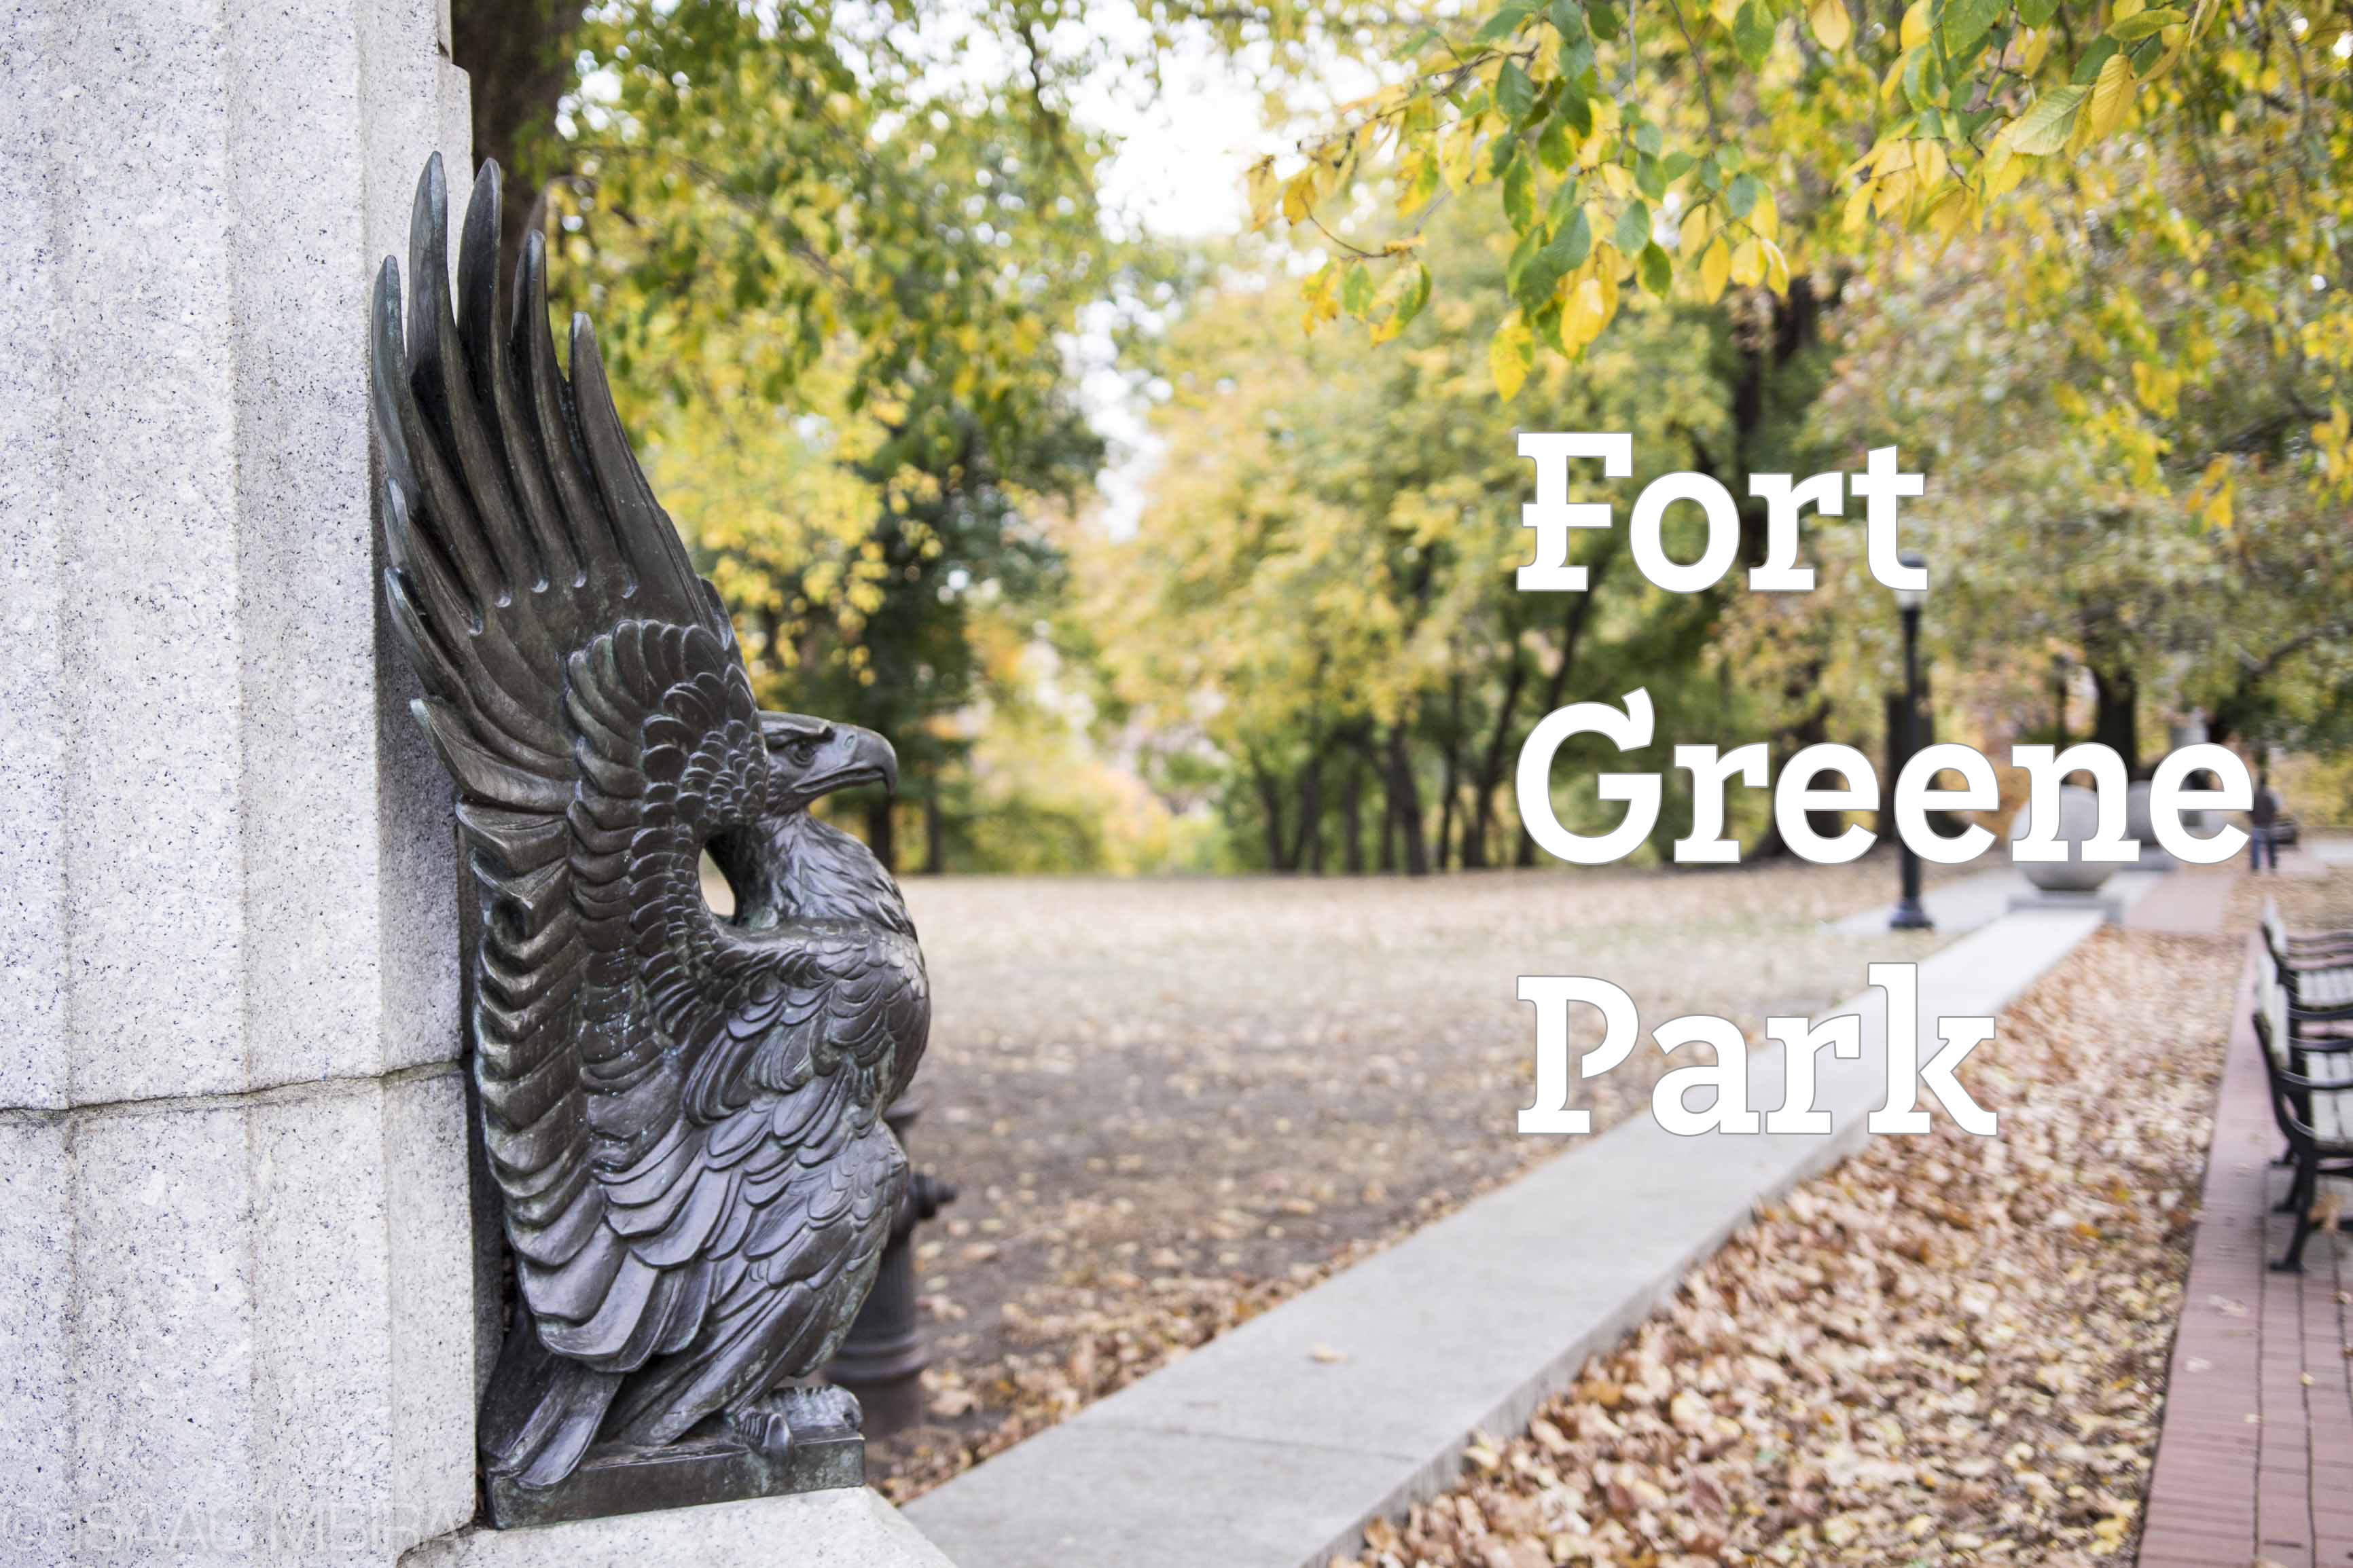 Fort Greene Park Eagle